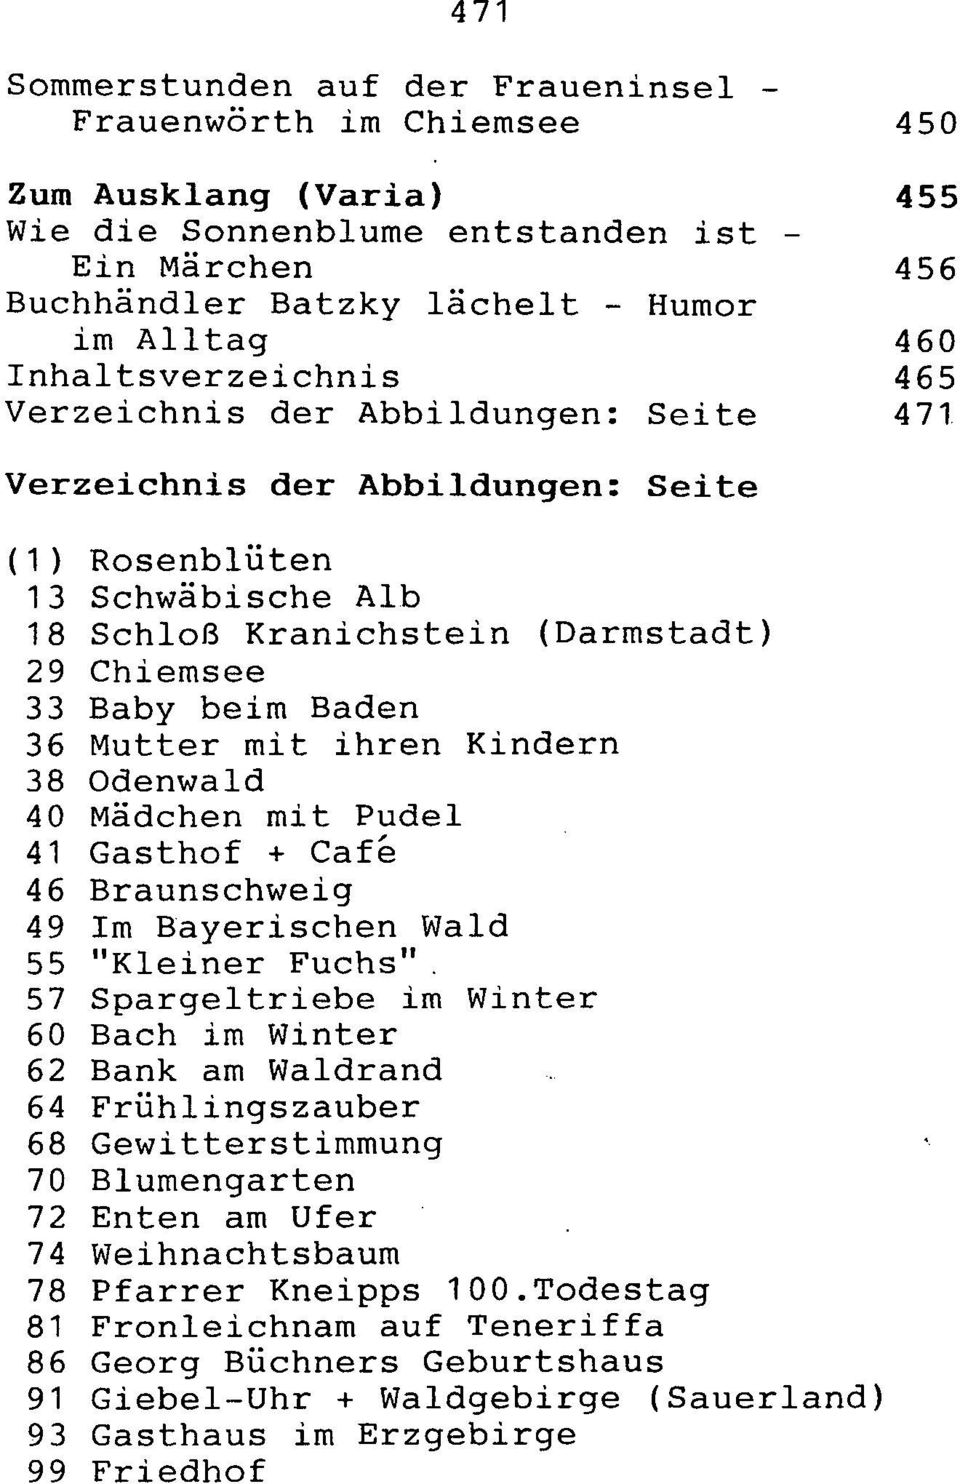 36 Mutter mit ihren Kindern 38 Odenwald 40 Mädchen mit Pudel 41 Gasthof + Cafe 46 Braunschweig 49 Im Bayerischen Wald 55 "Kleiner Fuchs".